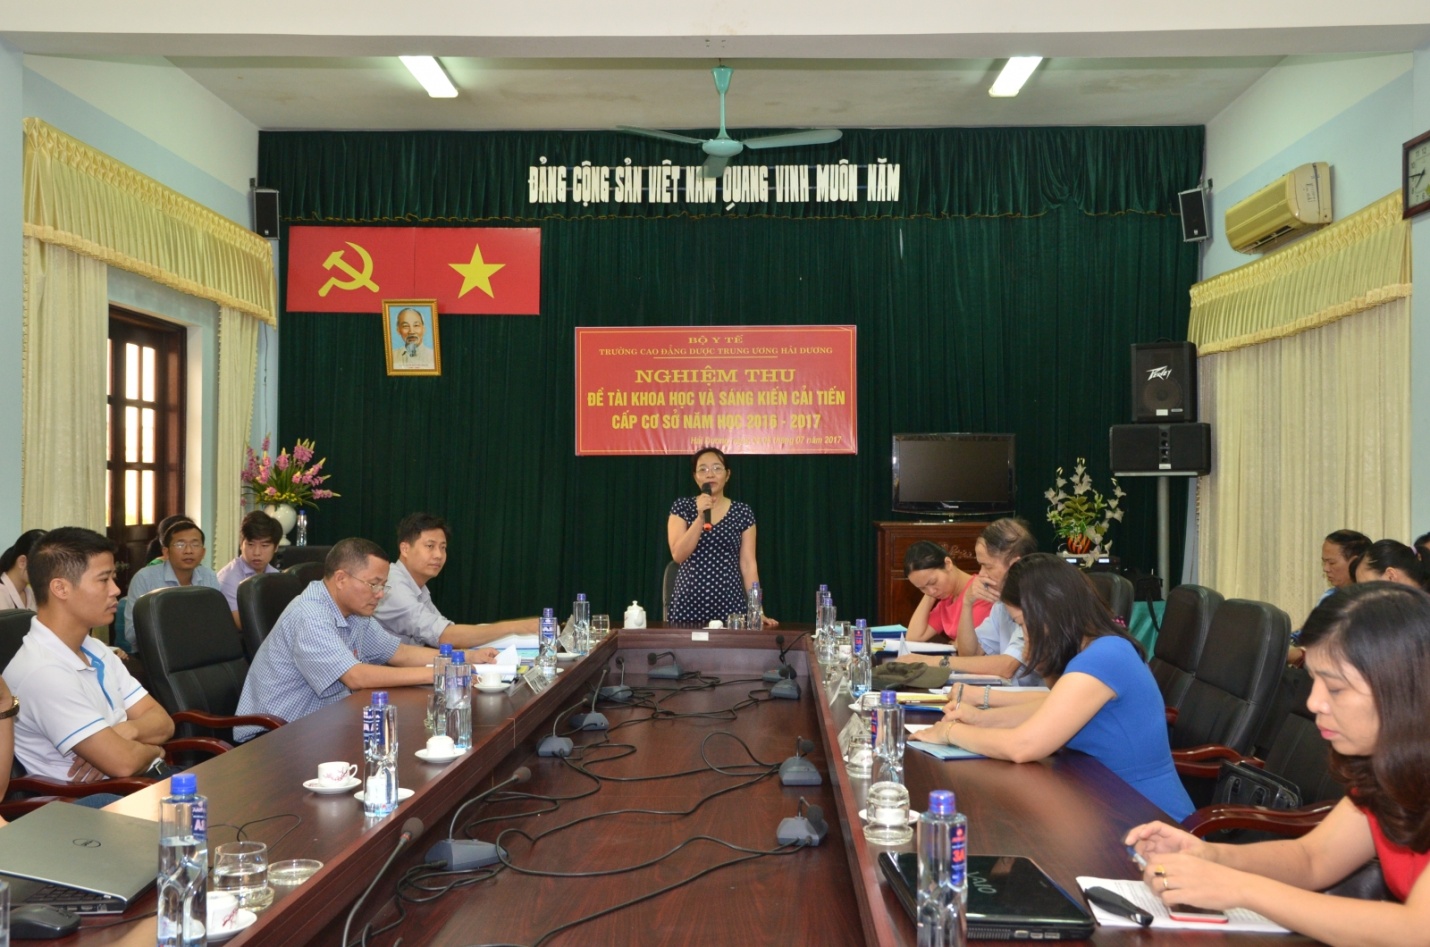 TS Nguyễn Thị Hường Hiệu trưởng phát biểu chỉ đạo buổi nghiệm thu đề tài sang kiến NCKH năm 20162017